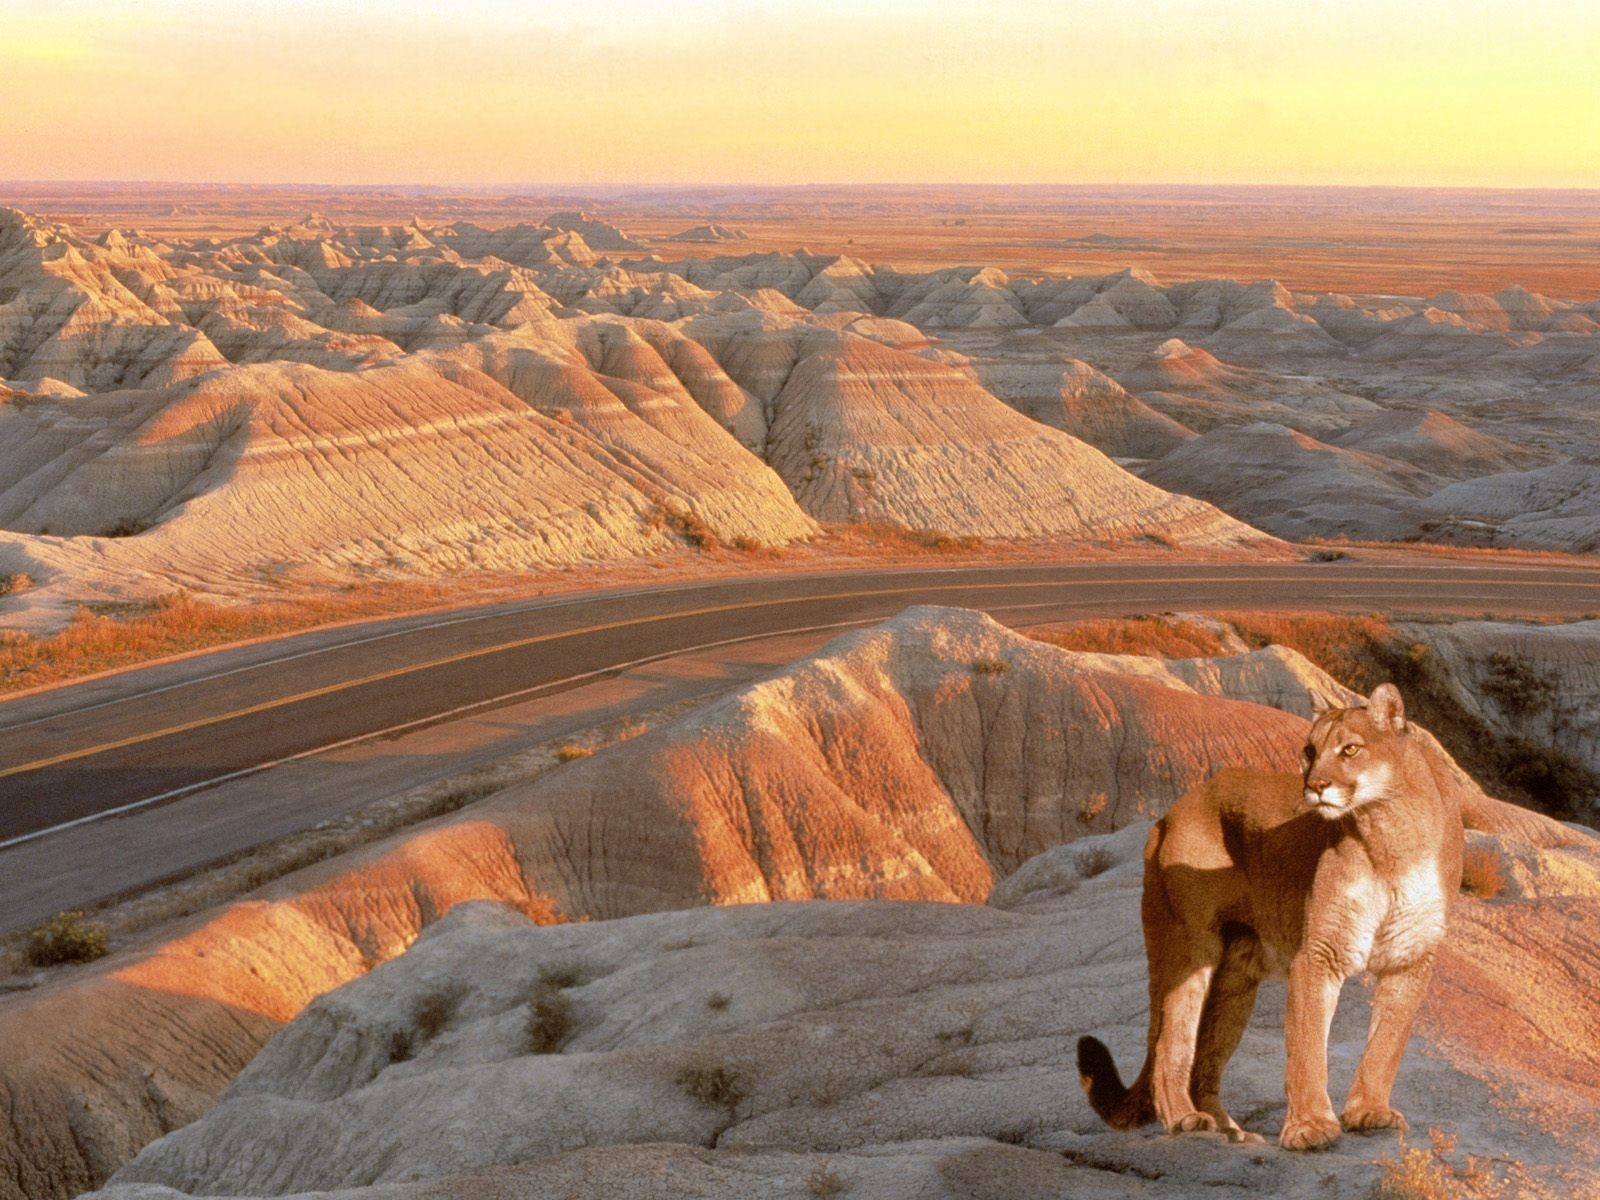 General 1600x1200 animals feline nature pumas landscape desert mammals big cats road